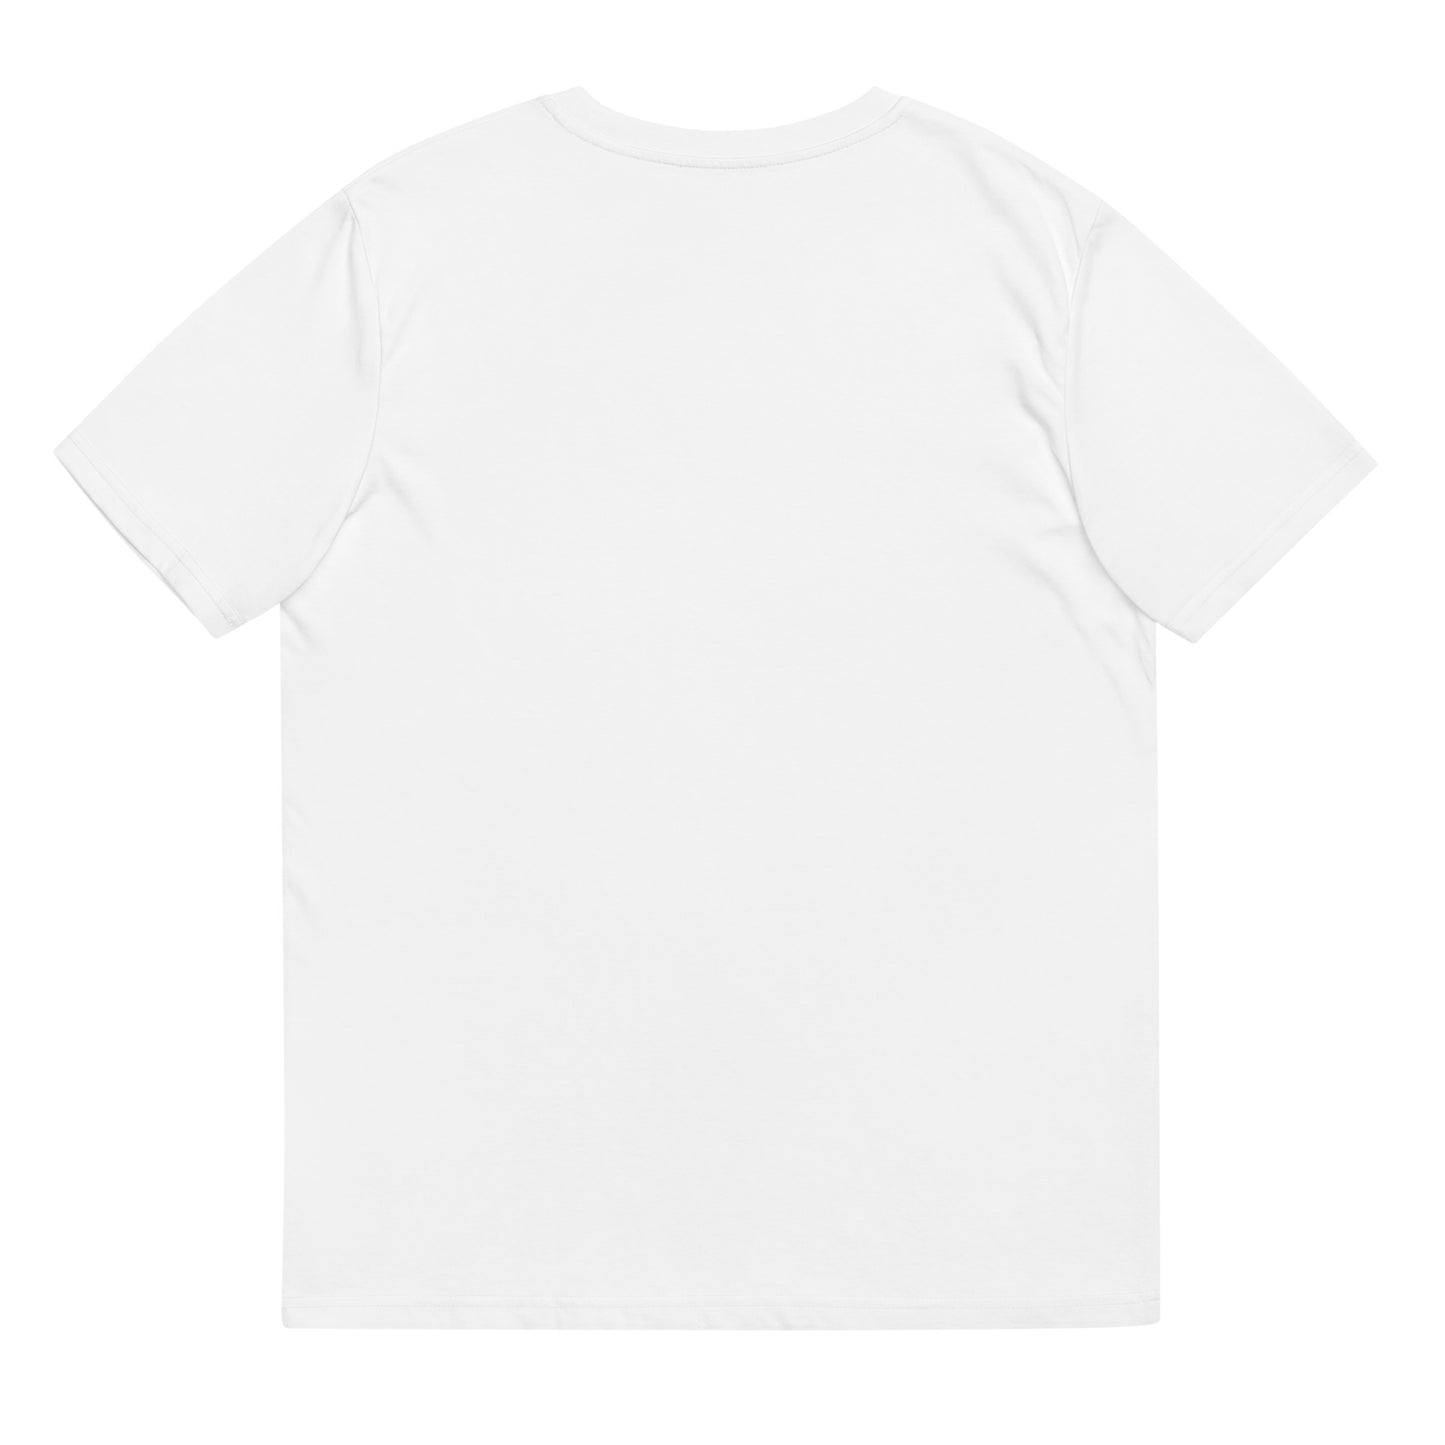 Tina & Luna 2 - T-shirt unisexe en coton biologique